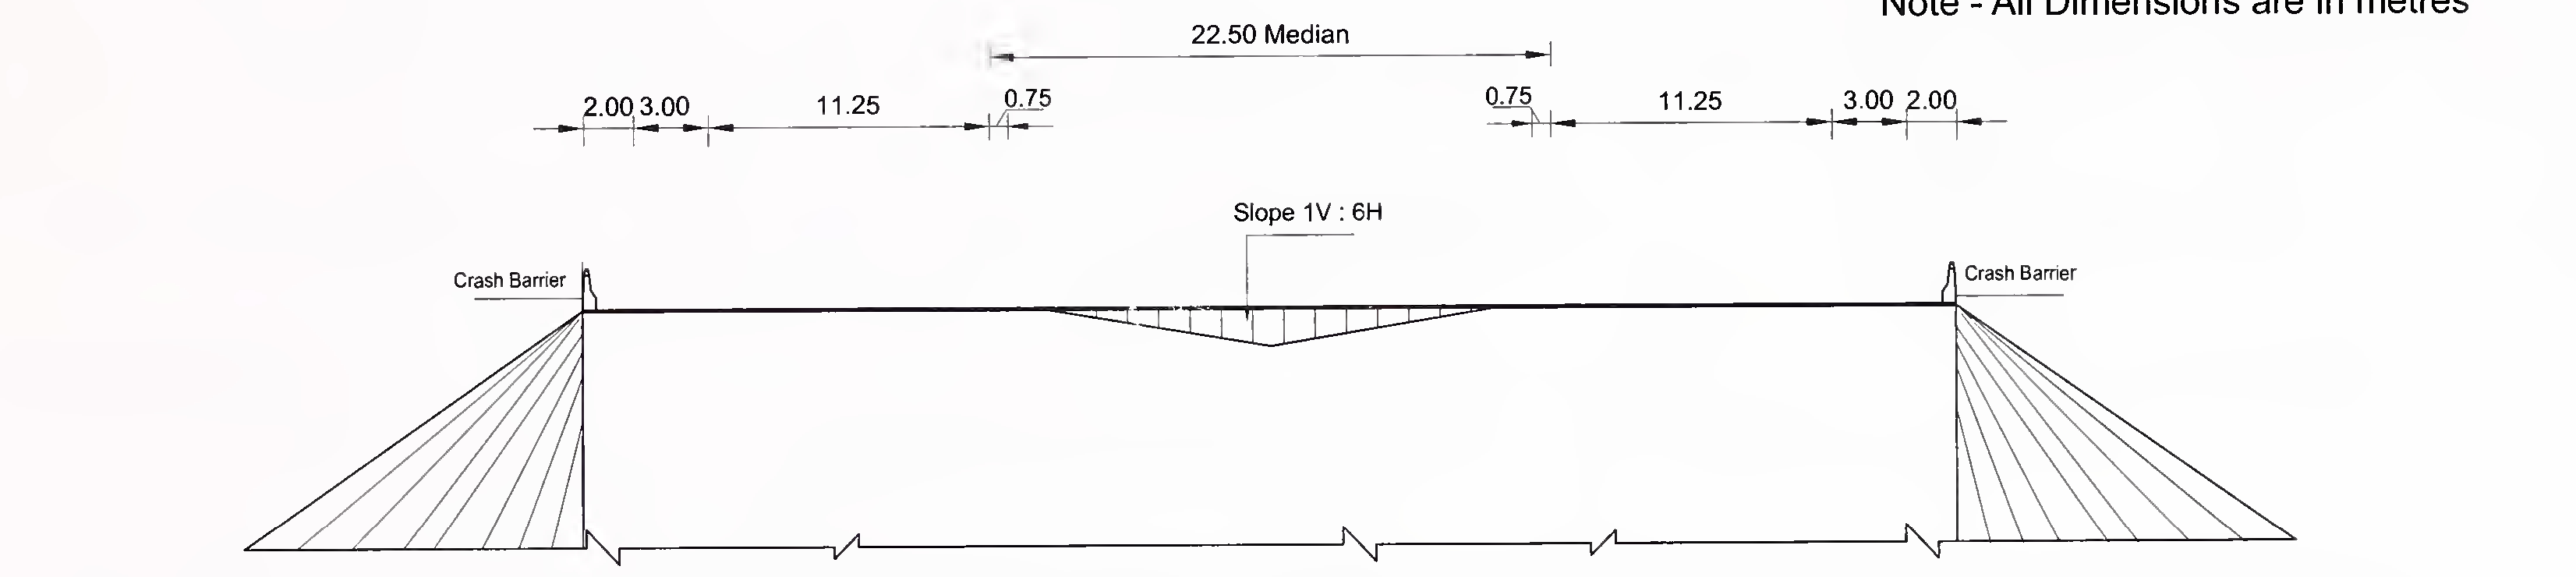 ചിത്രം 6.3 (ബി) 6-ലെയ്‌നിനുള്ള സ്ലാബിന്റെയും ബോക്സ് തരം കൽ‌വർട്ടിന്റെയും സാധാരണ ക്രോസ്-സെക്ഷൻ (2 × 3) വിഷാദമുള്ള മീഡിയൻ ഉള്ള എക്സ്പ്രസ് വേ